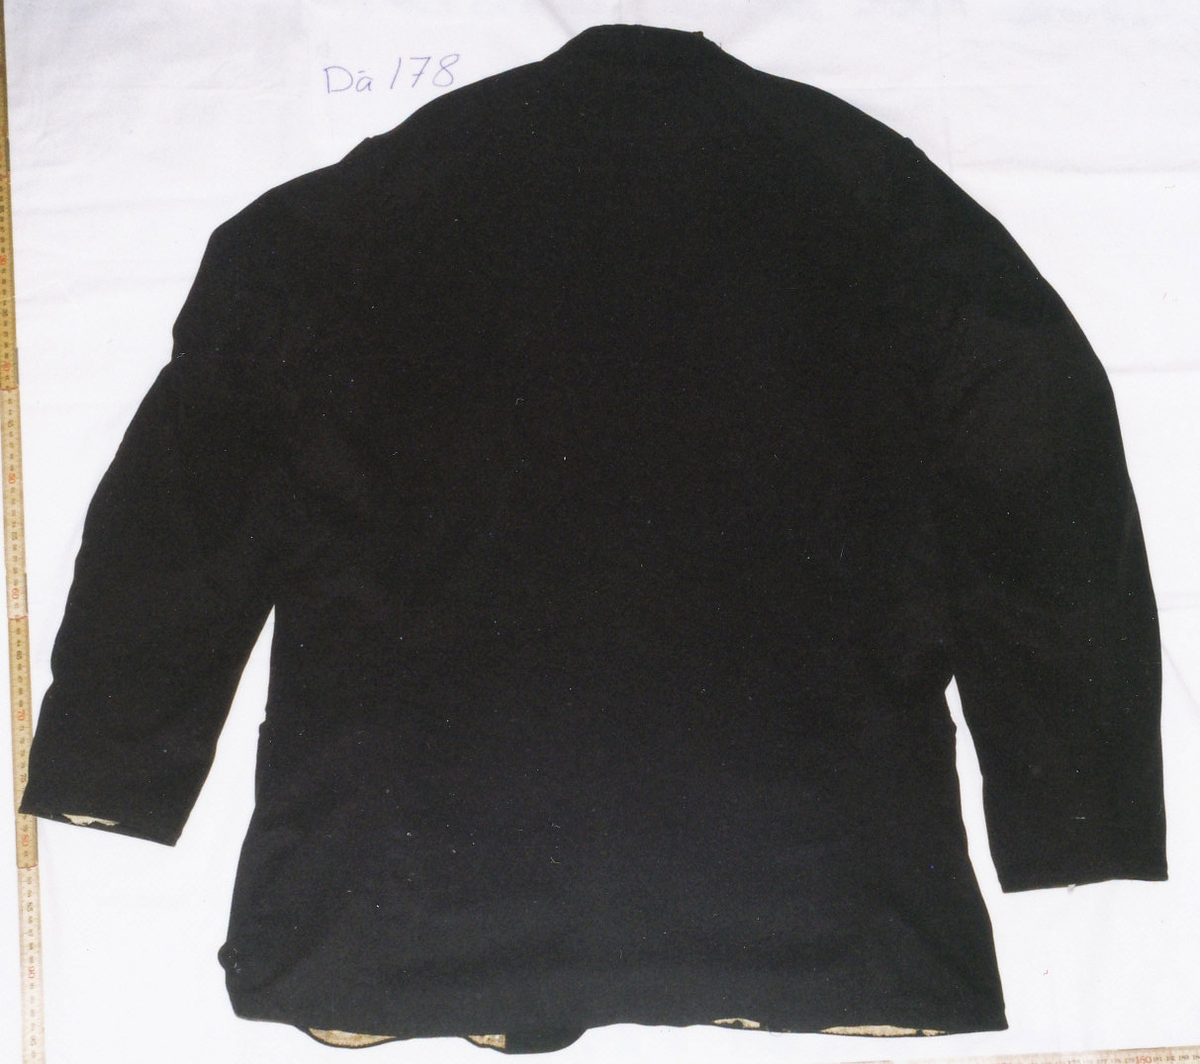 Kostym, brudgumskostym, bestående av kavaj, långbyxor och väst i svart tuskaftad ylle, enligt uppgift är tyget hemvävt. Handsydd av skräddare.
a. Kavaj. Två framstycken/sidstycken med tillbakadragna axelsömmar, smal nedliggande krage och slag, enkelknäppt med tre präglade svarta läderknappar och knapphål tränsade med svart sysilke, framkanterna något rundade nertill, två snedställda stolpfickor och en snedställd bröstficka på vänster sida. Helt ryggstycke med svängda ryggsömmar, isydd ensömsärm. Dekorsöm vid nederkanten och på bröstfickan med vågig efterstygnssöm. Foder i bålen av tryckt bomullstyg med små ovaler i beige och brunt, innerficka på vänster sida, ärmarna fodrade med grov vit linnelärft. 

b. Byxor. Två framstycken, två bakstycken förhöjda i midjan, ingen linning, två fickor i sidsömmen, dold gylfknäppning med tre knappar, knapphålen sydda med brunt lingarn, fyra gråbruna hängselknappar av ben. Helfodrade med grov vit linnelärft.

c. Väst. Framstycken och krage i ylletyget, tillbakadragna axelsömmar, liten nedliggande krage med rundade hörn, dubbelknäppt med sex par gråbruna benknappar, två extra knappar att knäppa ut slagen med, endast det vänstra slaget är infodrat med det svarta tyget, två stolpfickor. Ett bakstycke av fin vit linnelärft något uppsvängt bak, två spänntampar från sidsömmen med metallspänne. Framstyckena fodrade med hemvävt linnelärft tvärrandat i brunt och beige. Dekorsöm vid nederkanten med vågig efterstygnssöm.

Anteckning: Brudgumskostym buren av Karl Gustaf Karlsson, Kroken, Skårtaryd vid bröllopet 1867. Skänkt av hans barn Hilda, Oskar, Alfred och Edit Karlsson 1939, vilka alla förblev ogifta. Fadern var kyrkvärd i Dädesjö i 30 år.

Birgitta Blixt 2021.